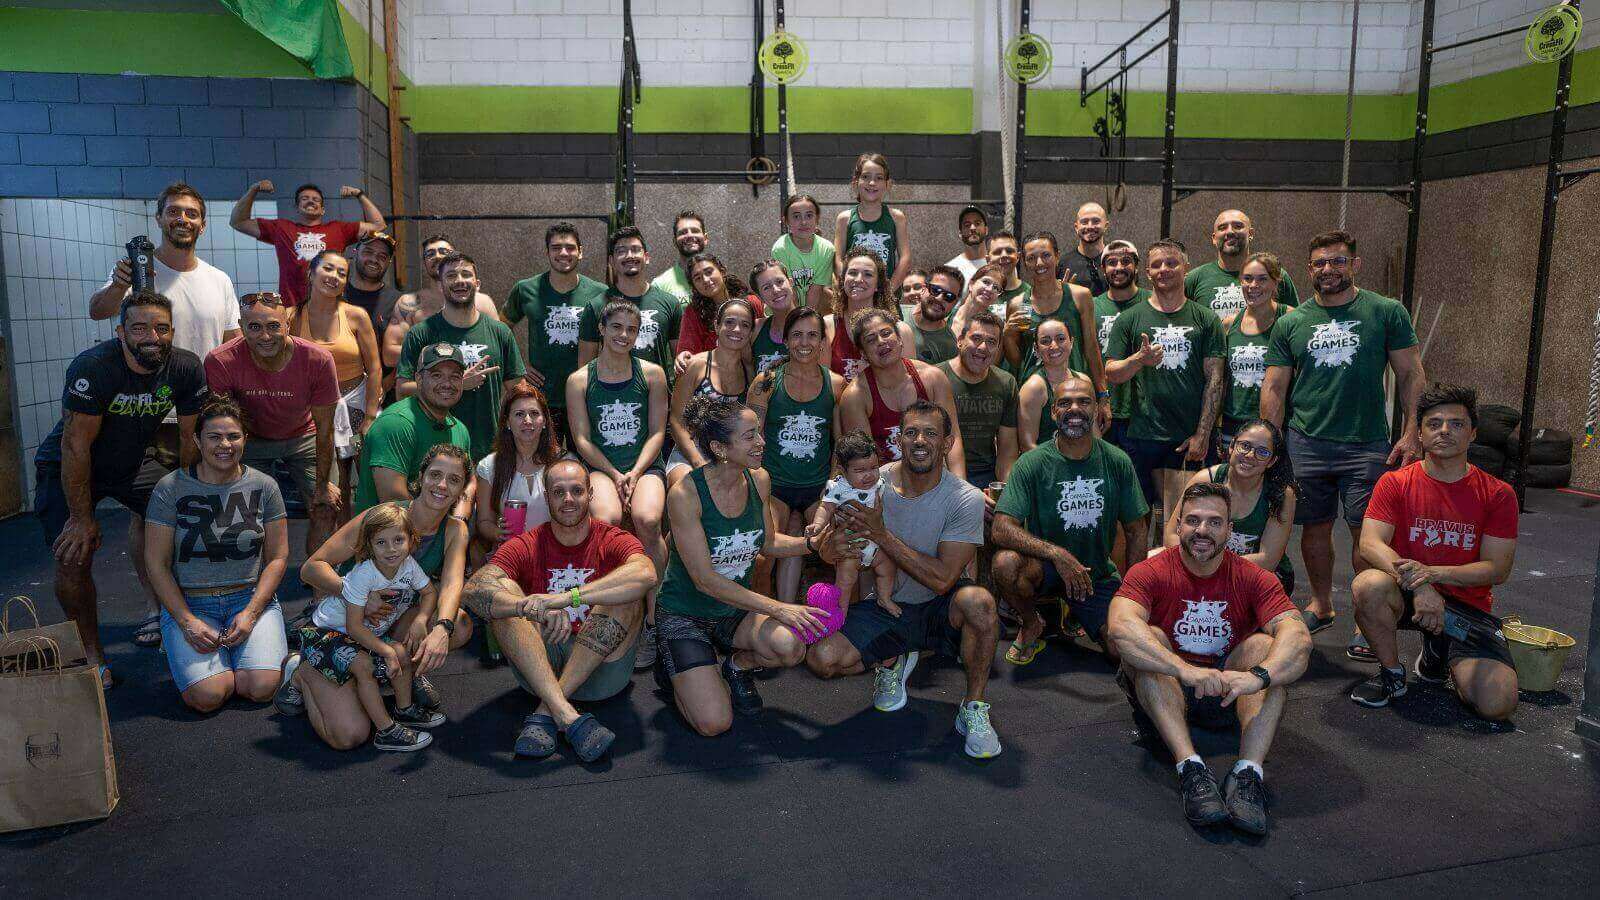 Grupo de pessoas reunidas em uma academia de CrossFit, identificada como CrossFit DaMata de Jundiaí. O grupo é composto por homens, mulheres e crianças.